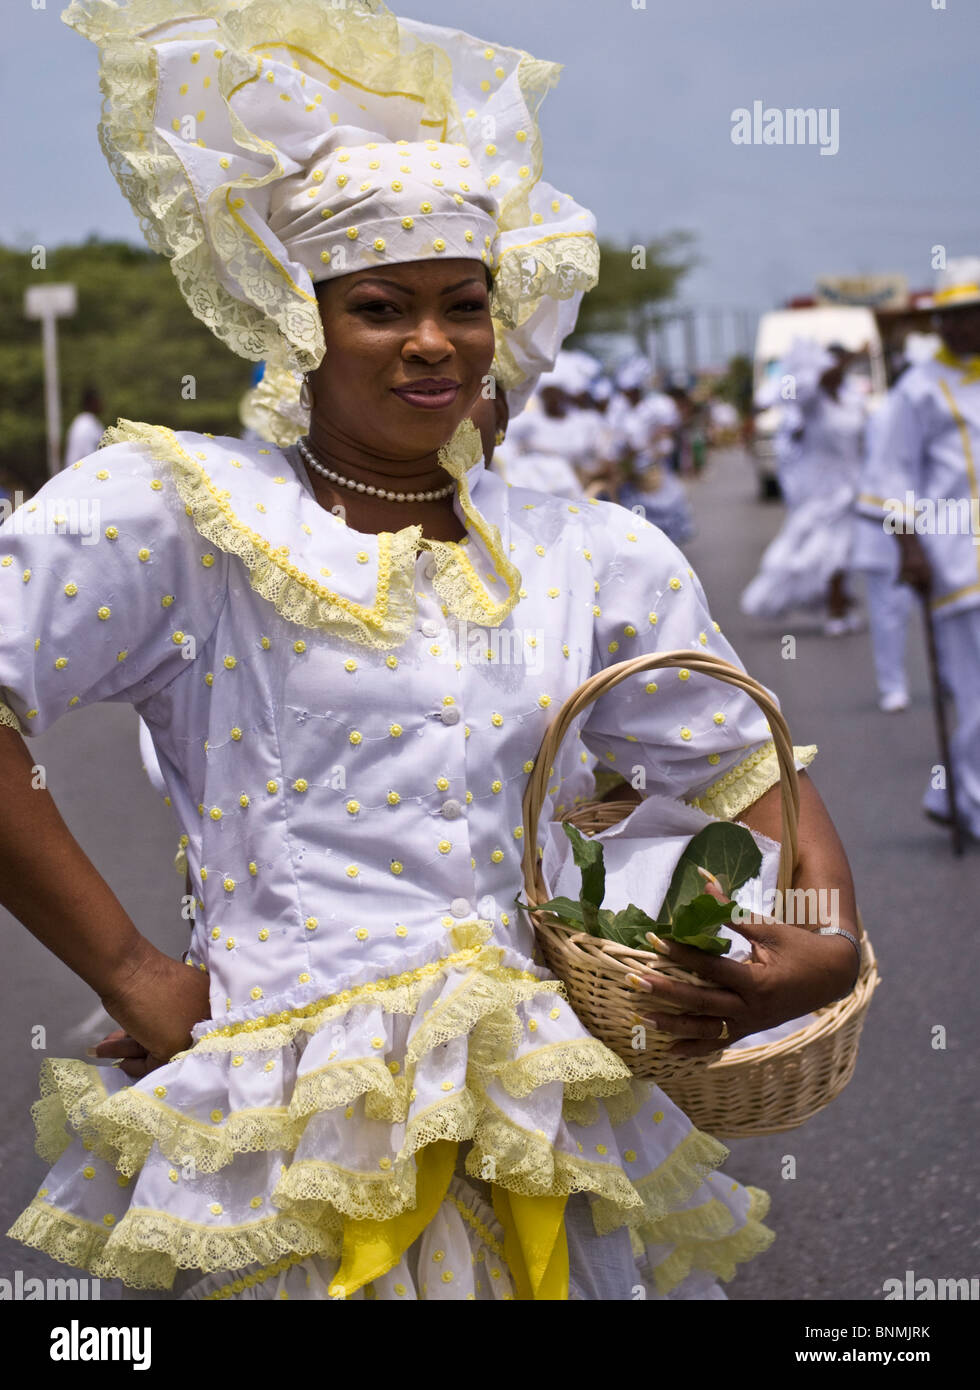 Attraente ragazza locale all'unica Seu Festival che si tiene ogni anno a Curacao, Antille olandesi, Caraibi Foto Stock